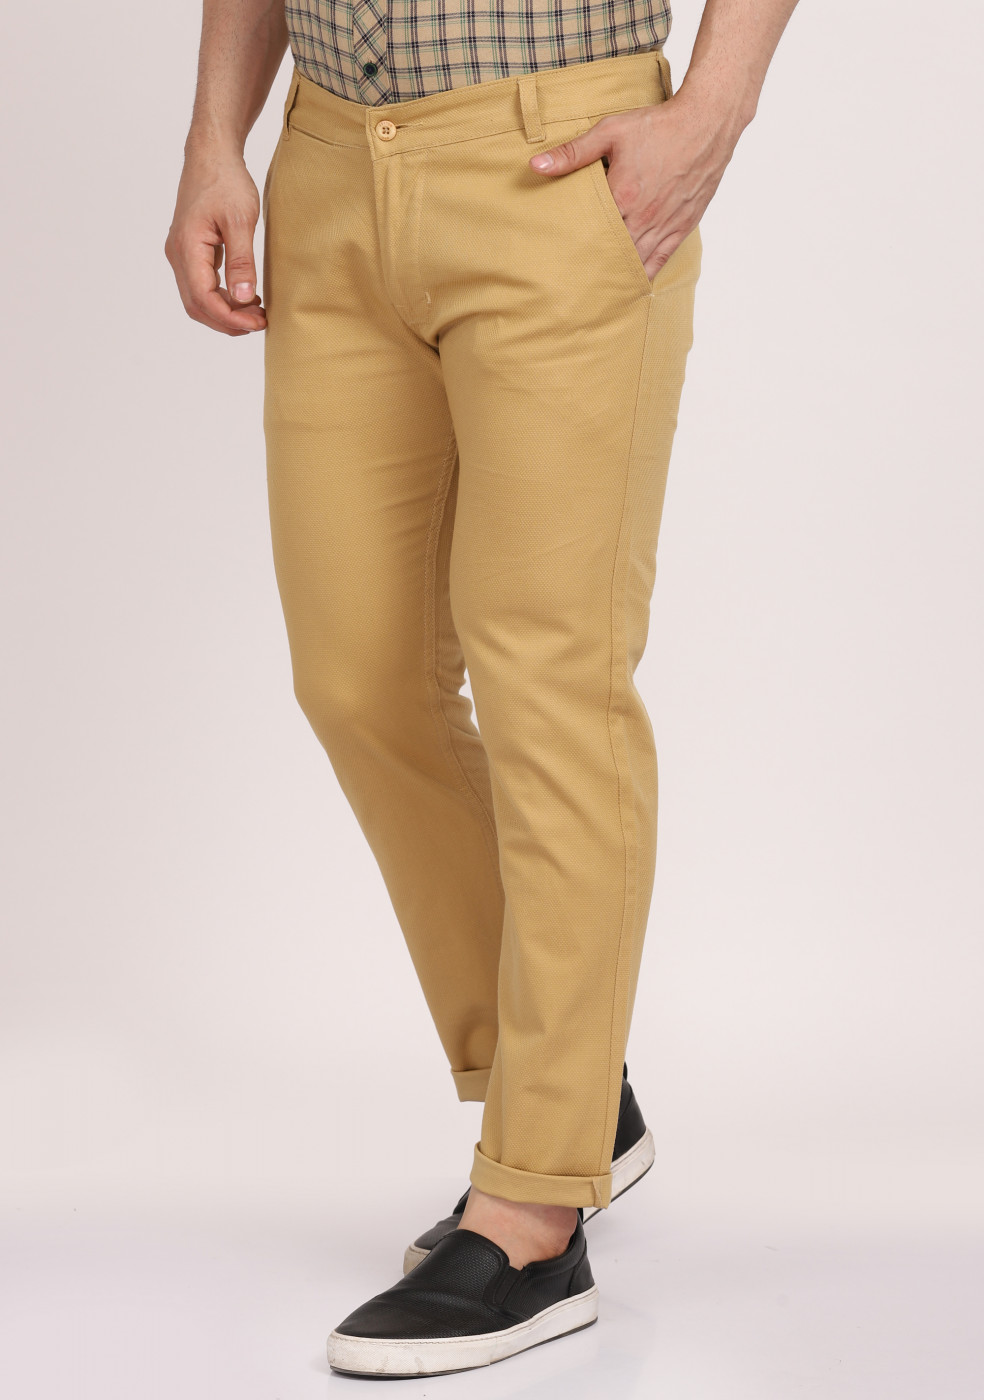 ASHTOM Khaki Formal Cotton Trouser Regular Fit For Men